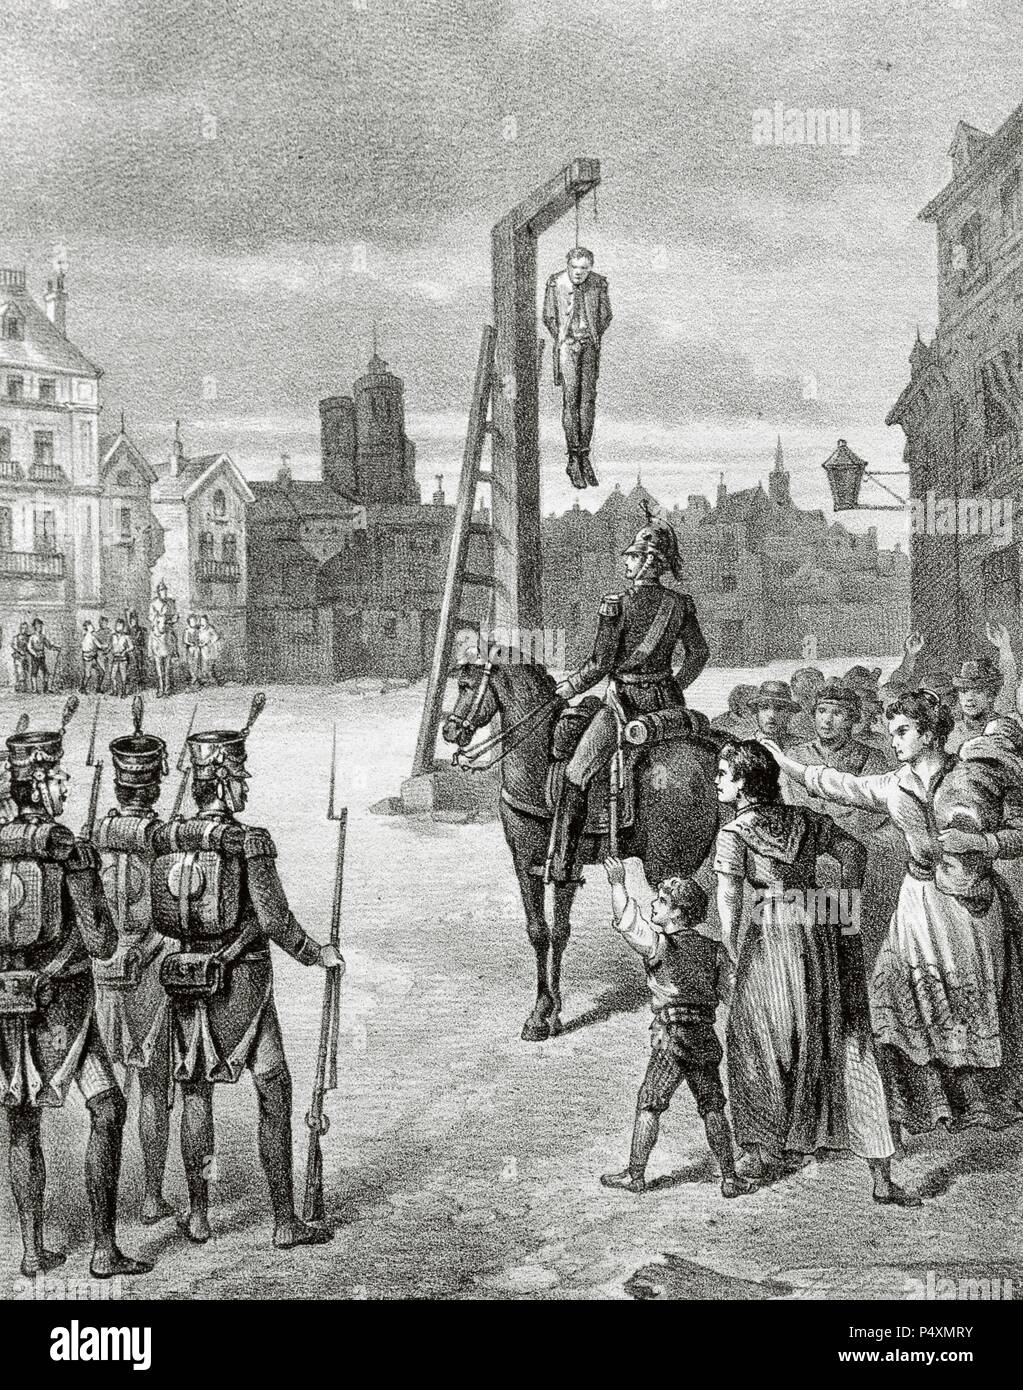 Rafael del Riego (1785-1823). Spanische Militärs und Politiker. Des Hochverrats beschuldigt, er wurde verurteilt gehangen zu werden. Öffentliche Hinrichtung von Riego in der cebada Square, Madrid, am 7. November 1823. Spanien. Gravur. Stockfoto